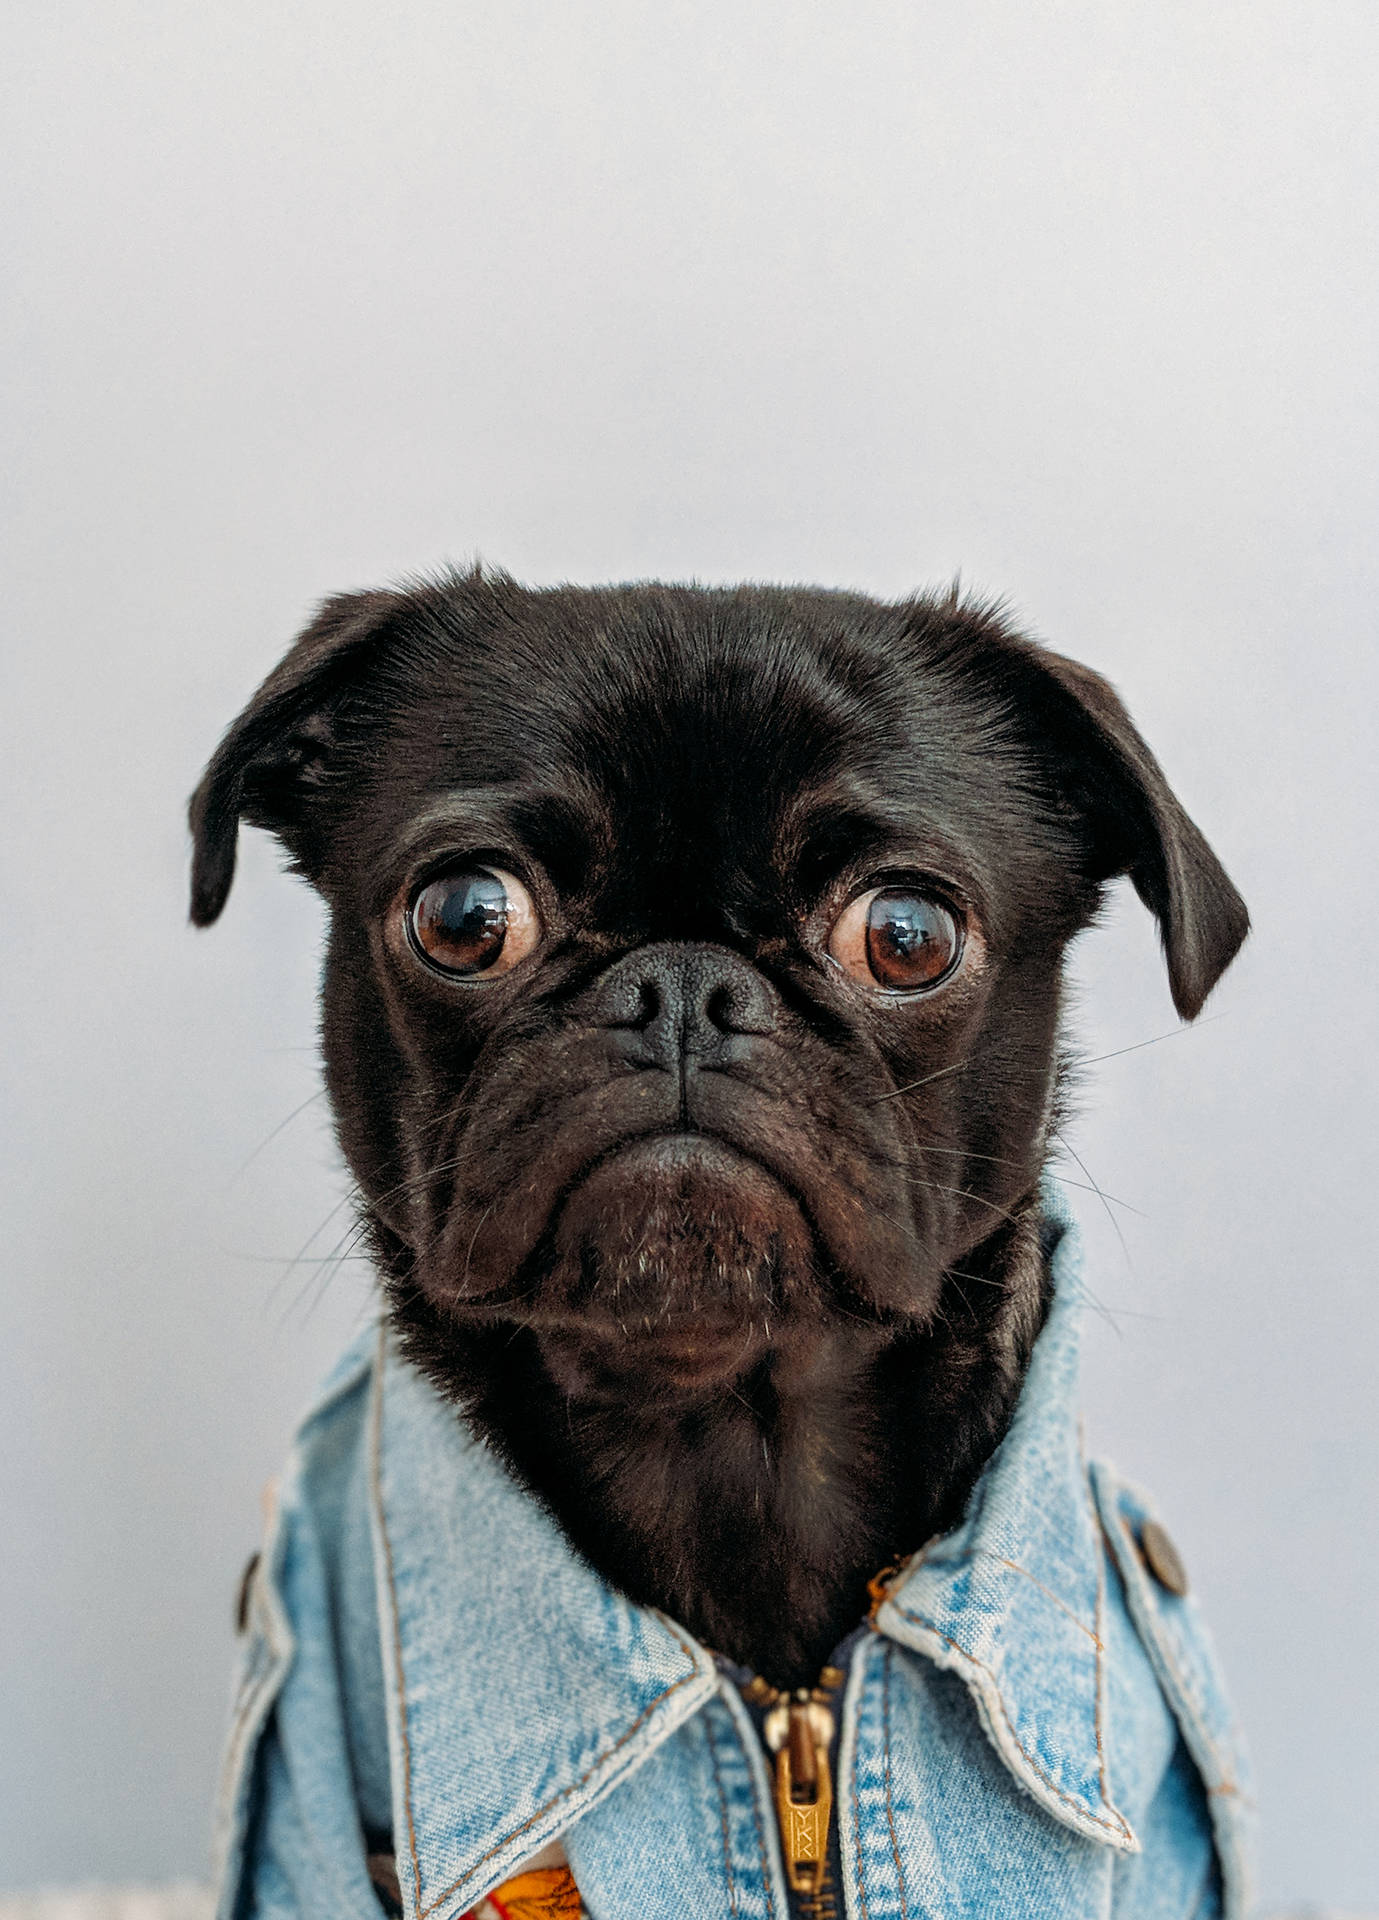 Dennabedårande Hund I Denimkläder Vill Bara Ha En Kram. Wallpaper